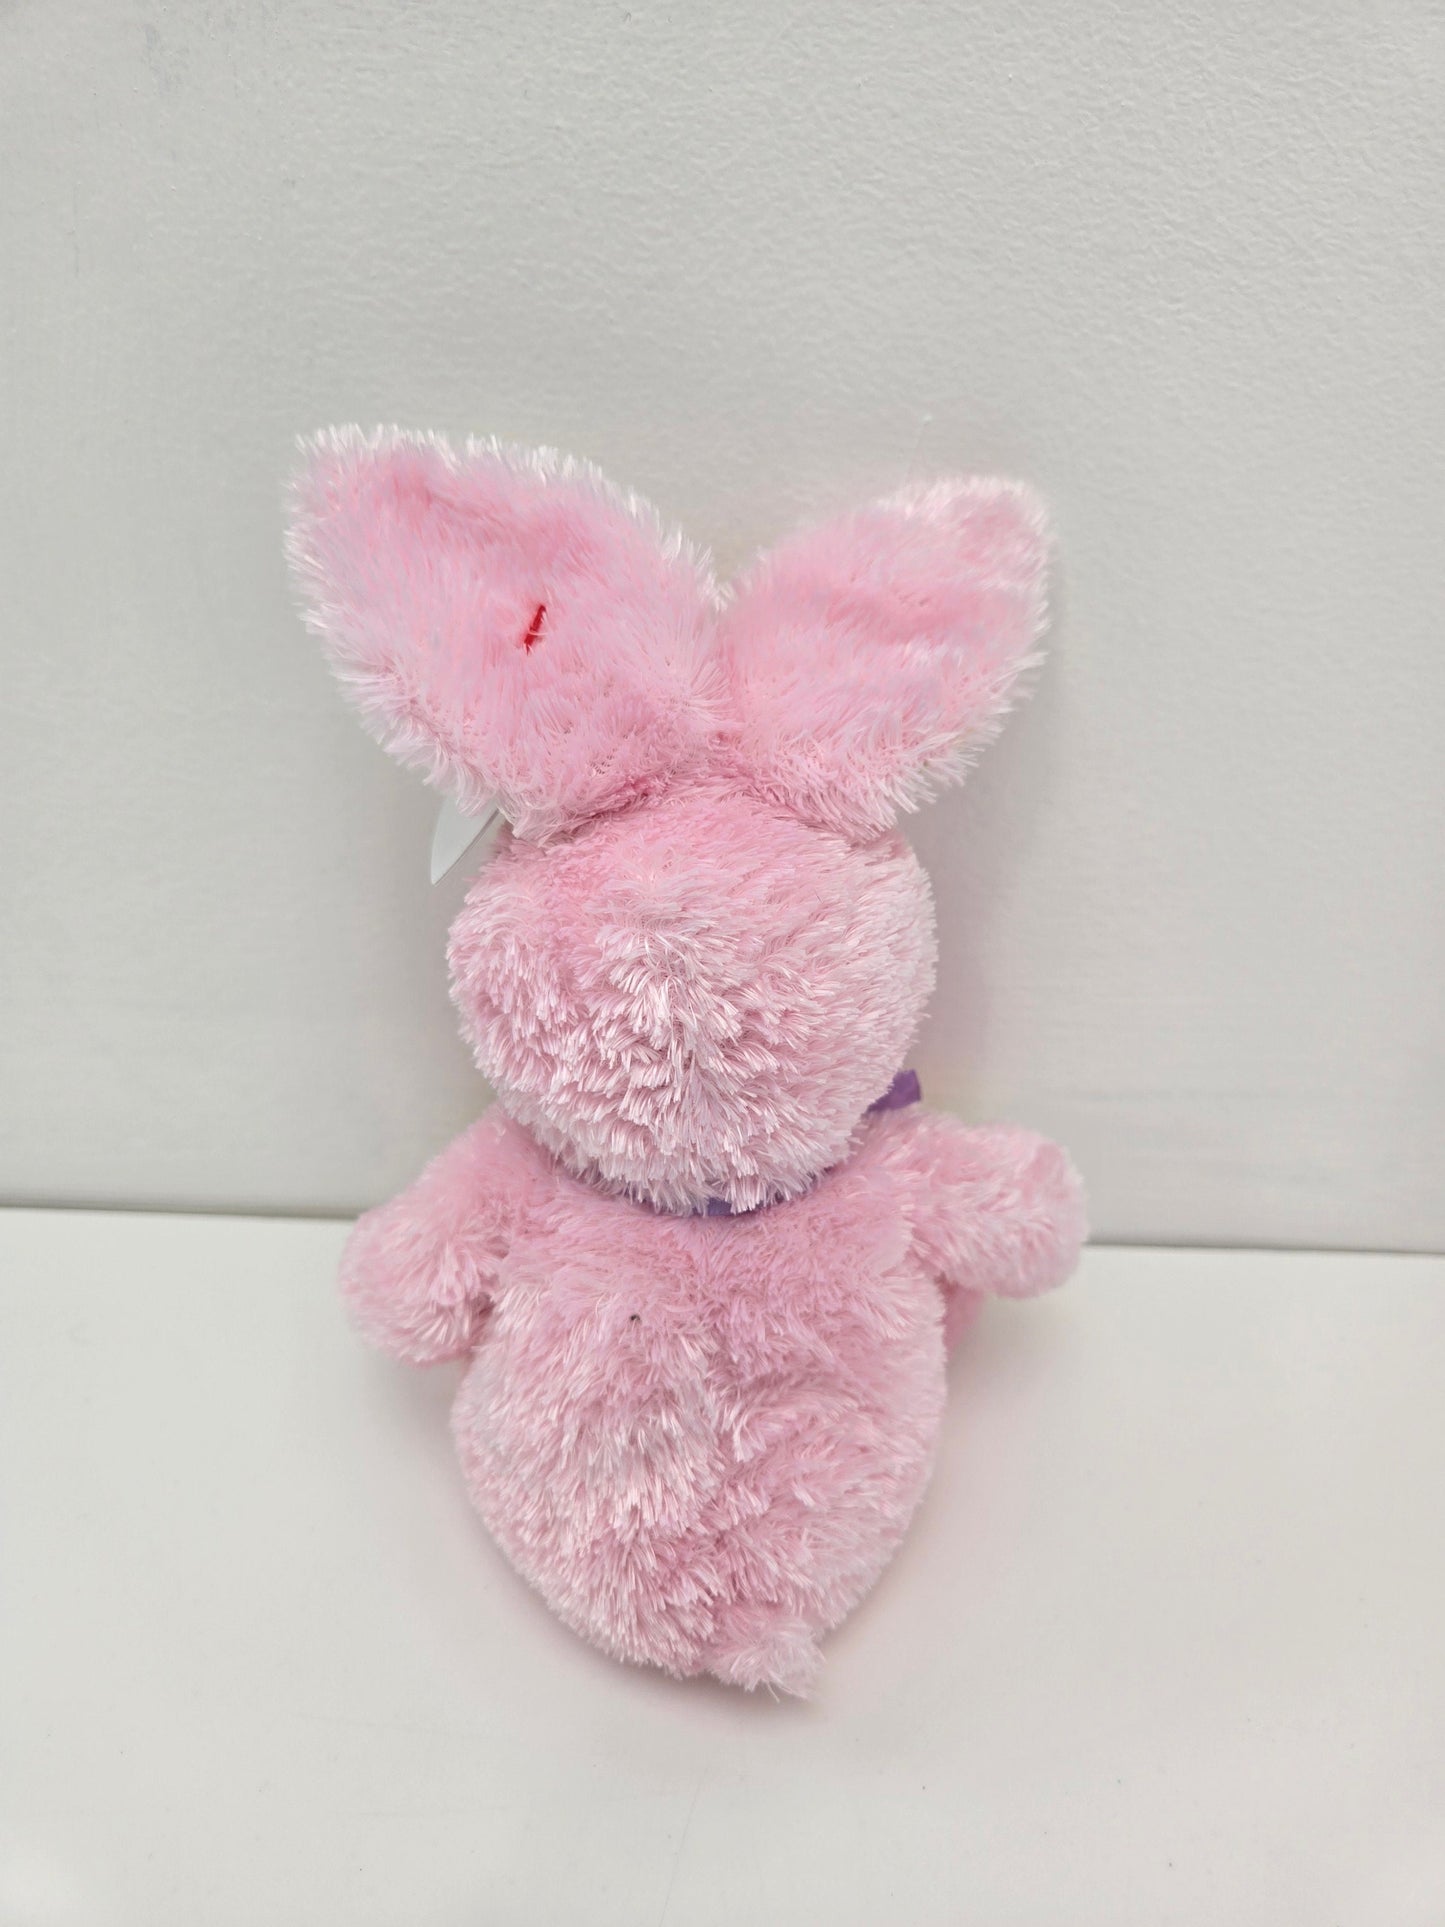 Ty Beanie Baby “Hoppity” the Fuzzy Pink Bunny (8 inch)